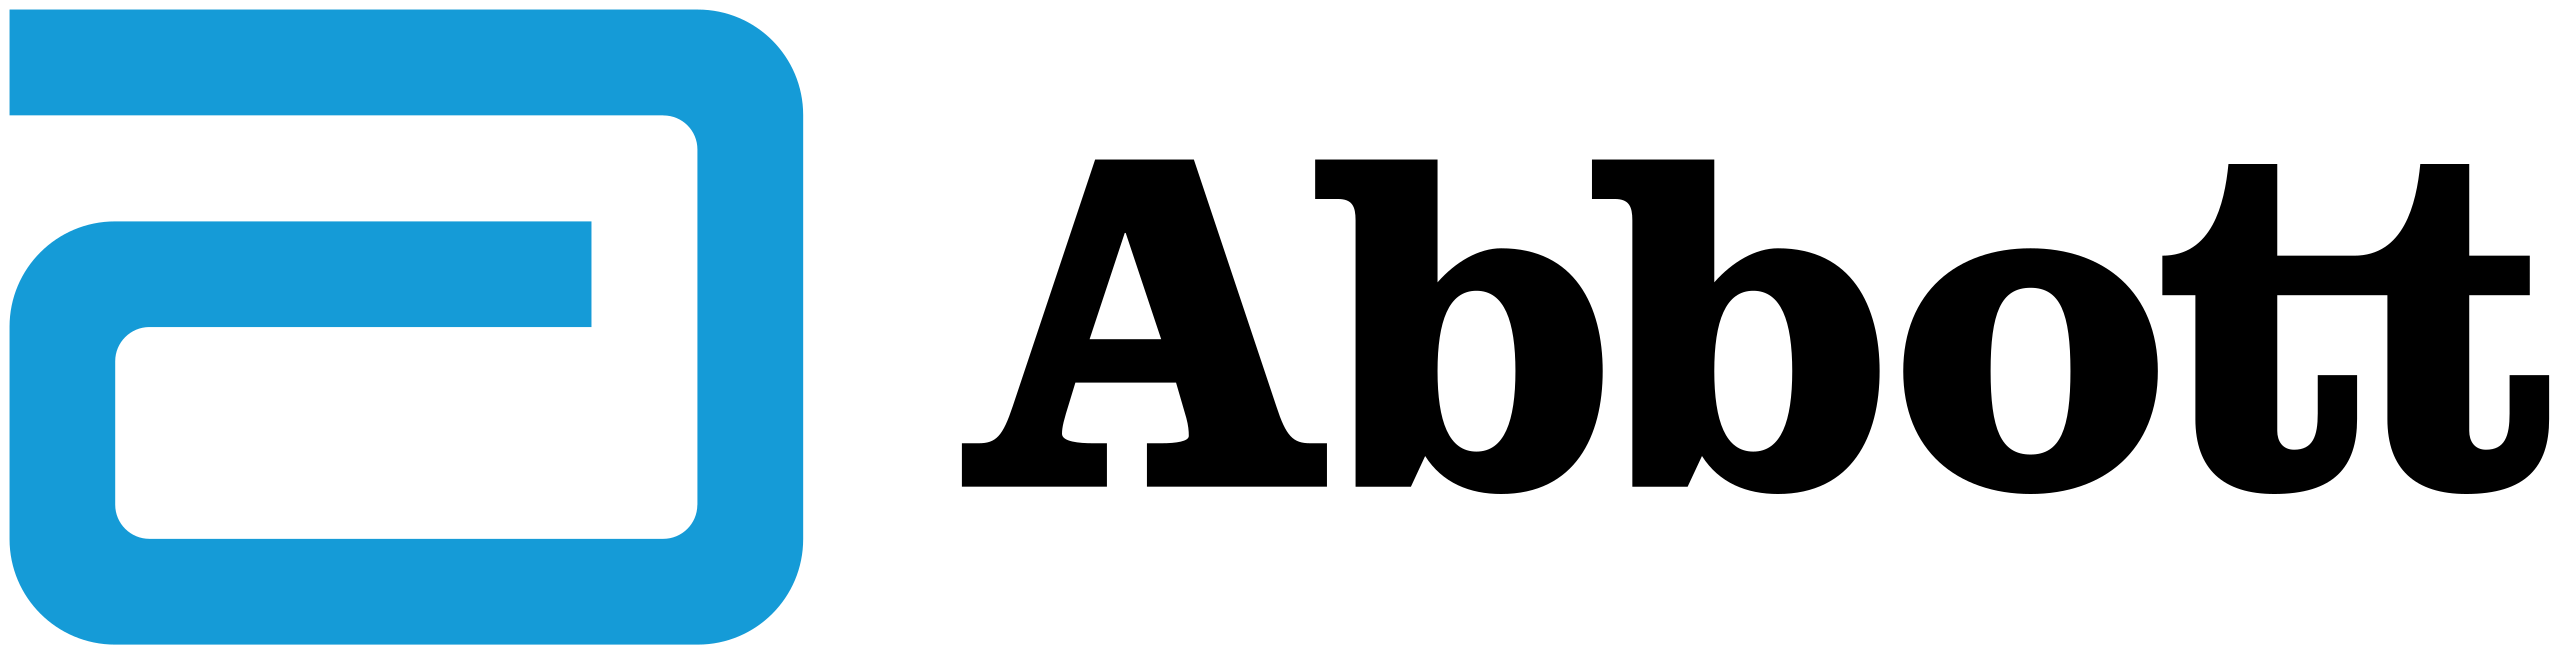 Abbott_Laboratories_logo.svg